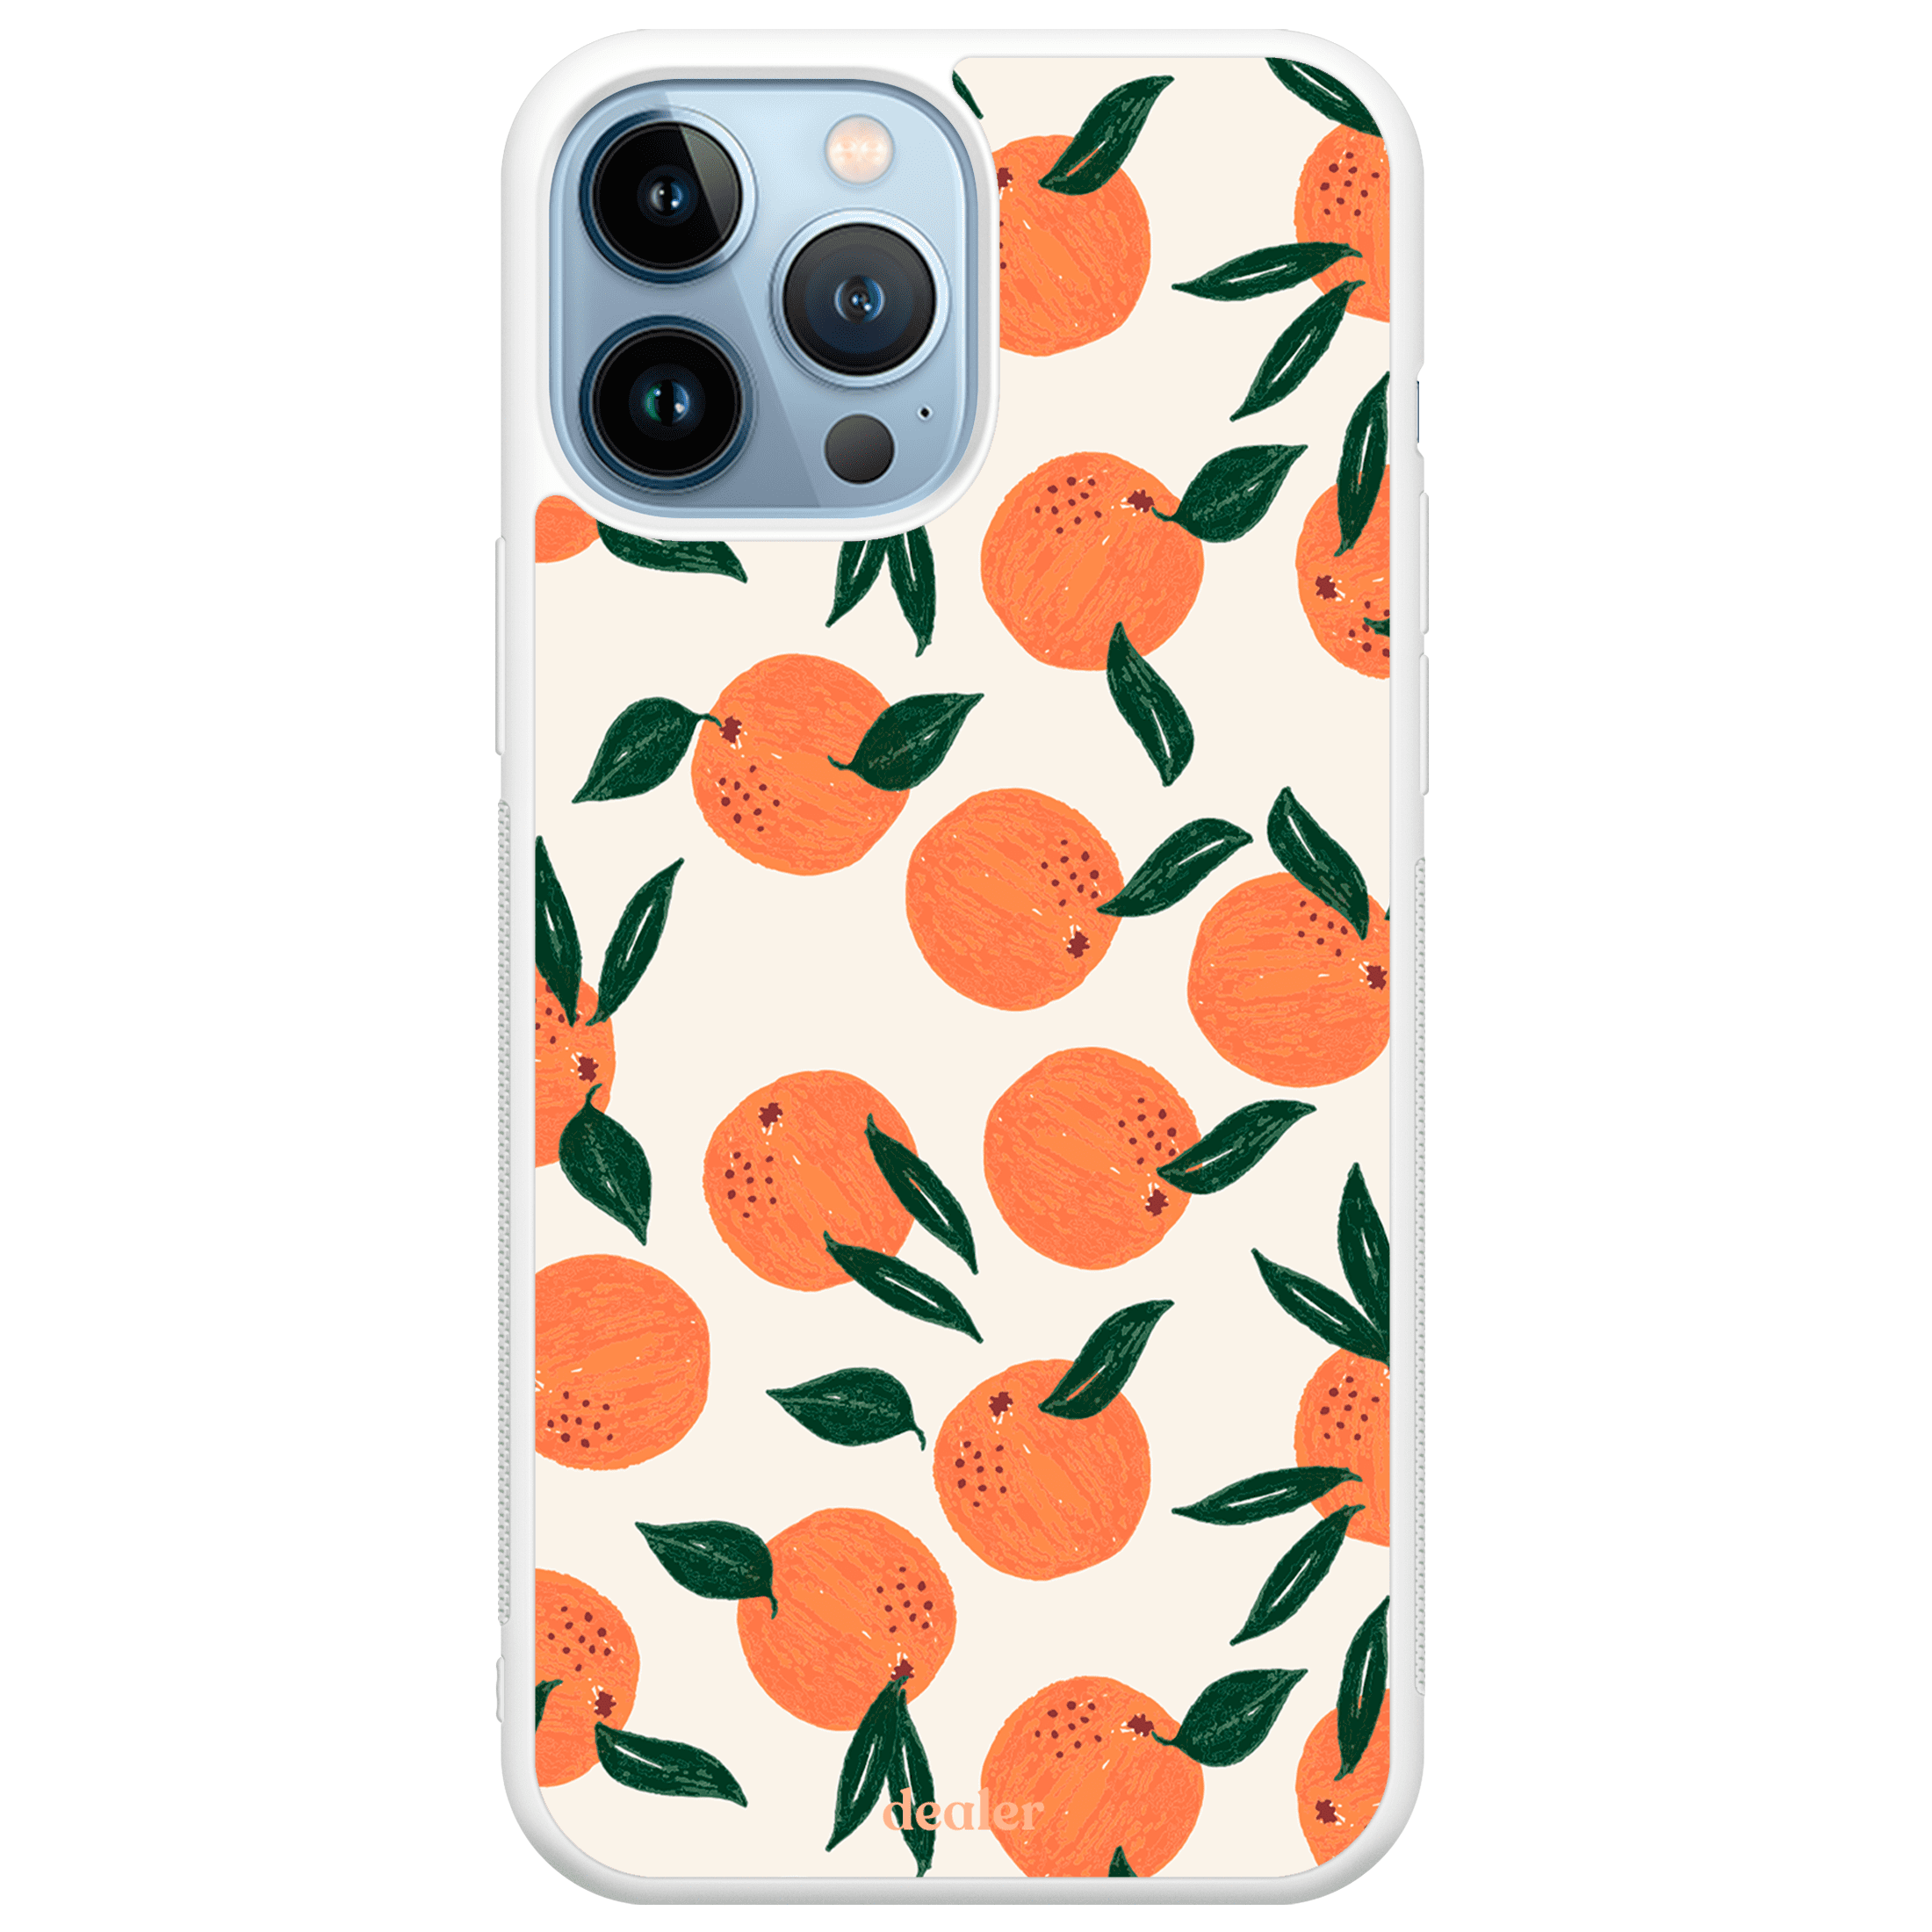 Coque de téléphone avec des oranges, modèle Orange en silicone renforcé Dealer de coque